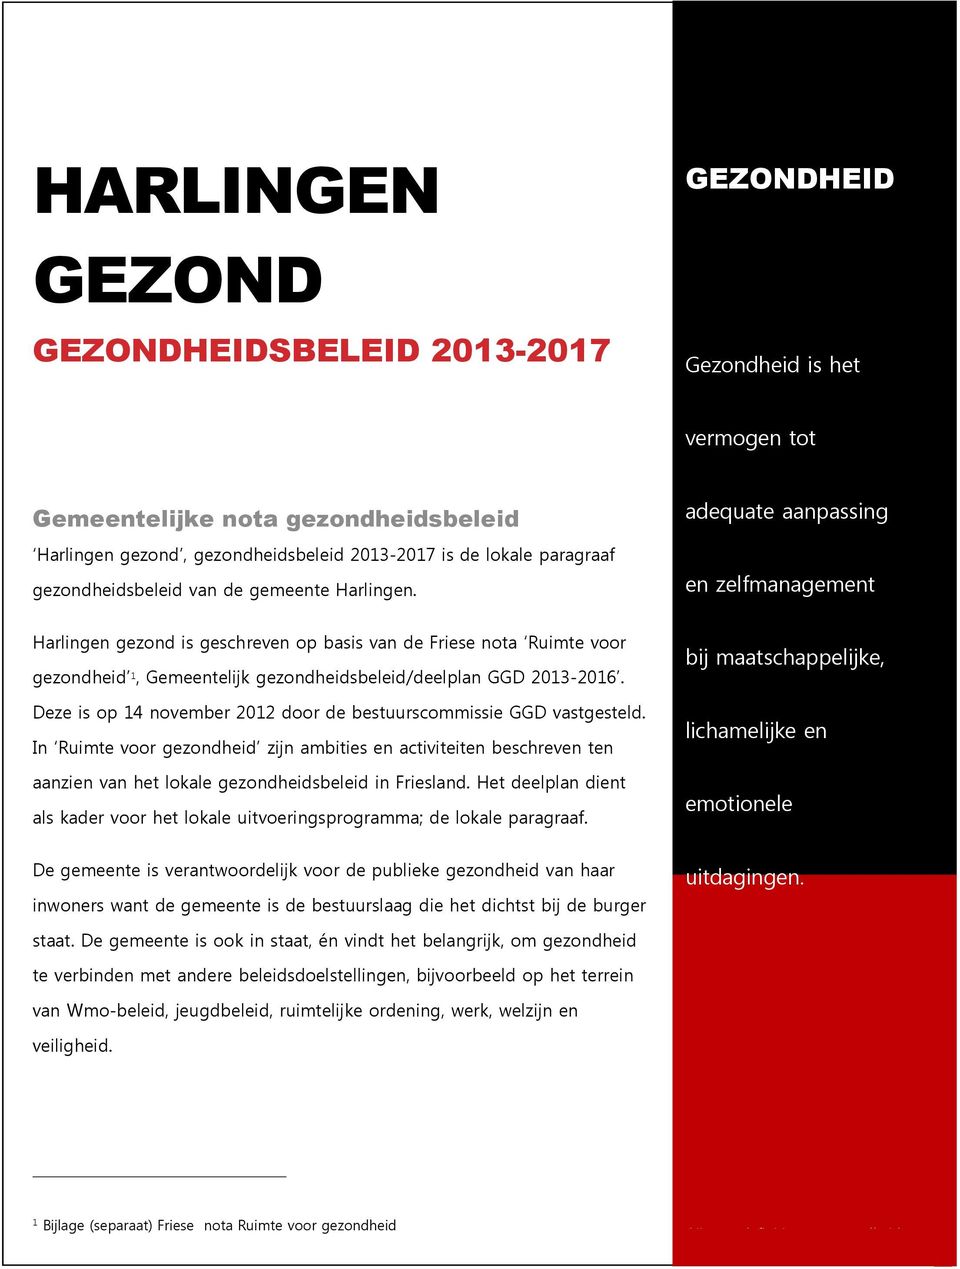 adequate aanpassing en zelfmanagement Harlingen gezond is geschreven op basis van de Friese nota Ruimte voor gezondheid 1, Gemeentelijk gezondheidsbeleid/deelplan GGD 2013-2016.